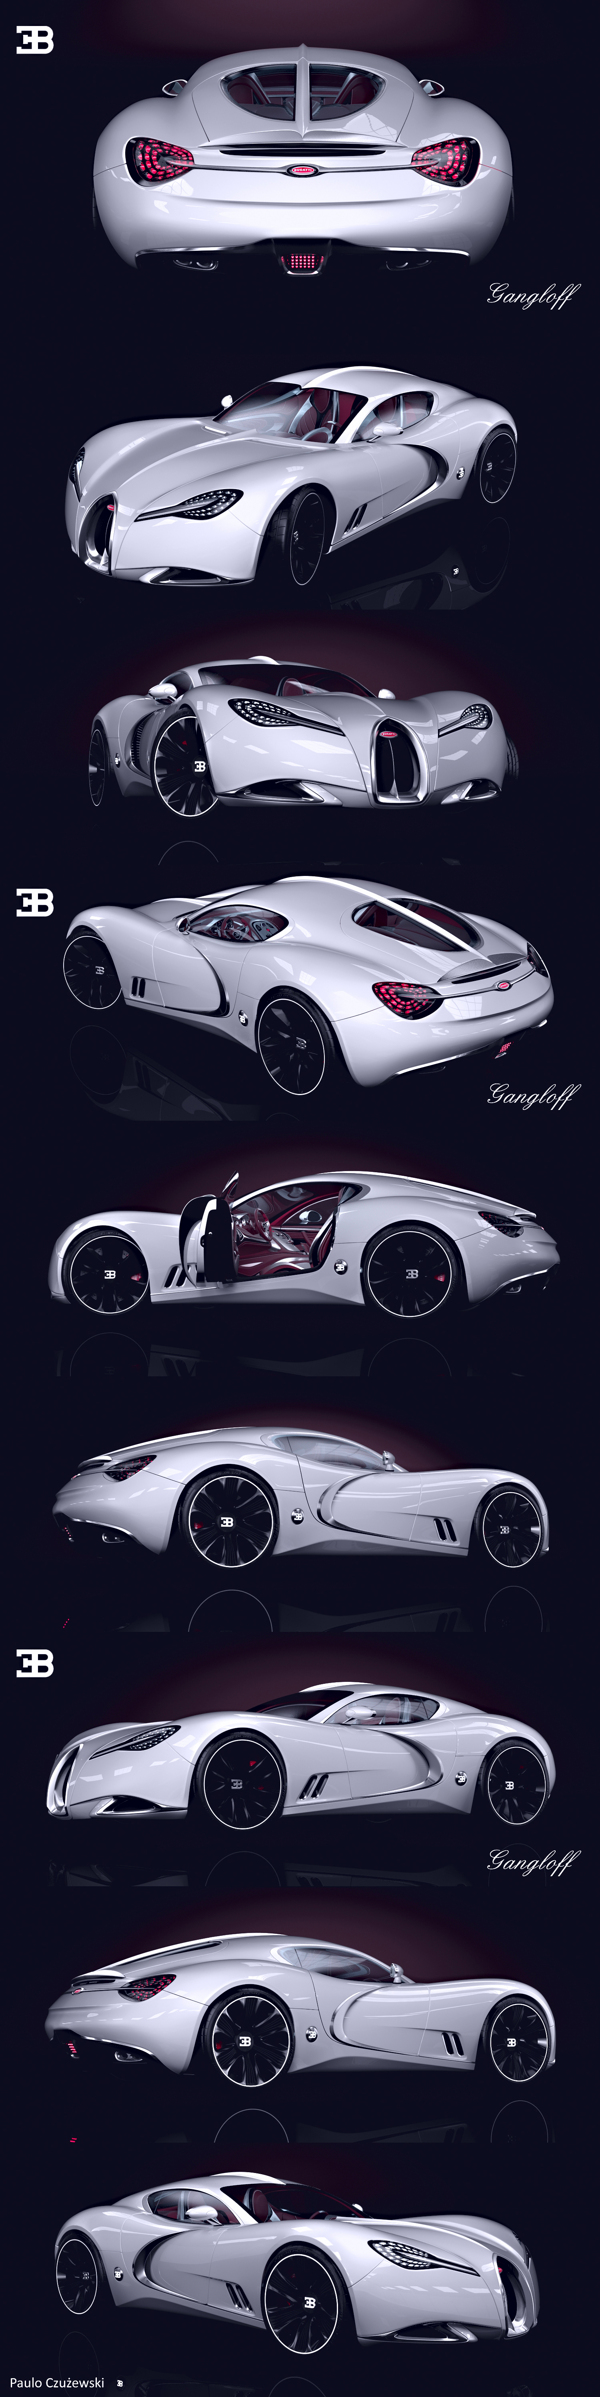 concept Bugatti Gangloff, Invisium